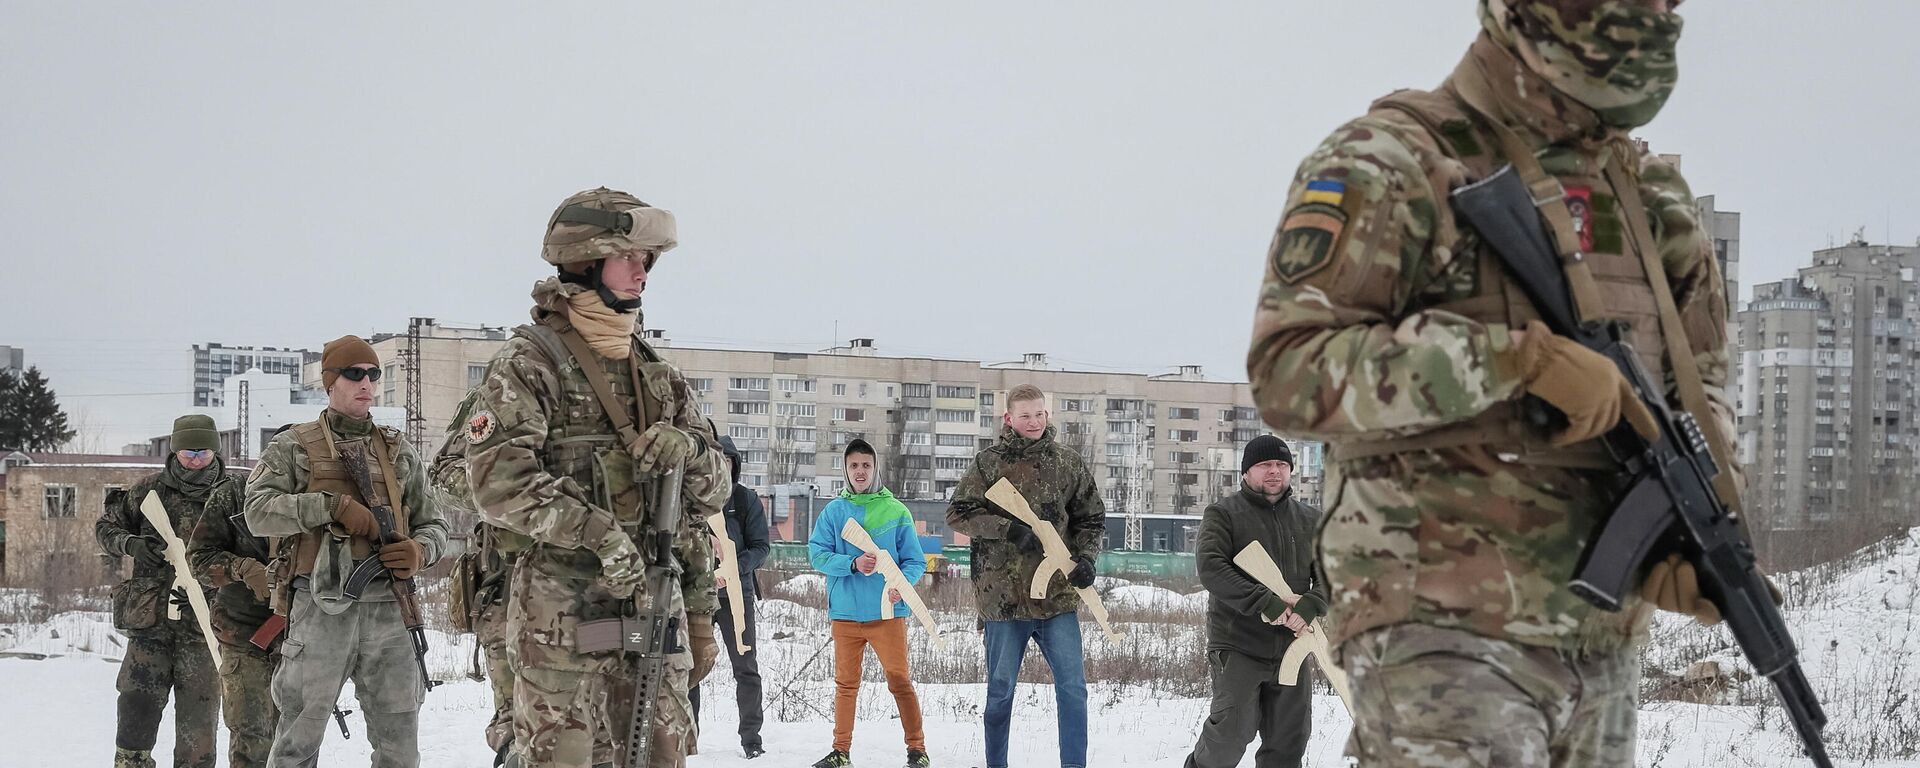 Veteranos do batalhão Azov, da Guarda Nacional Ucraniana, realizam exercícios militares para civis em Kiev, em 6 de fevereiro de 2022, antes da operação militar russa na Ucrânia - Sputnik Brasil, 1920, 06.03.2022